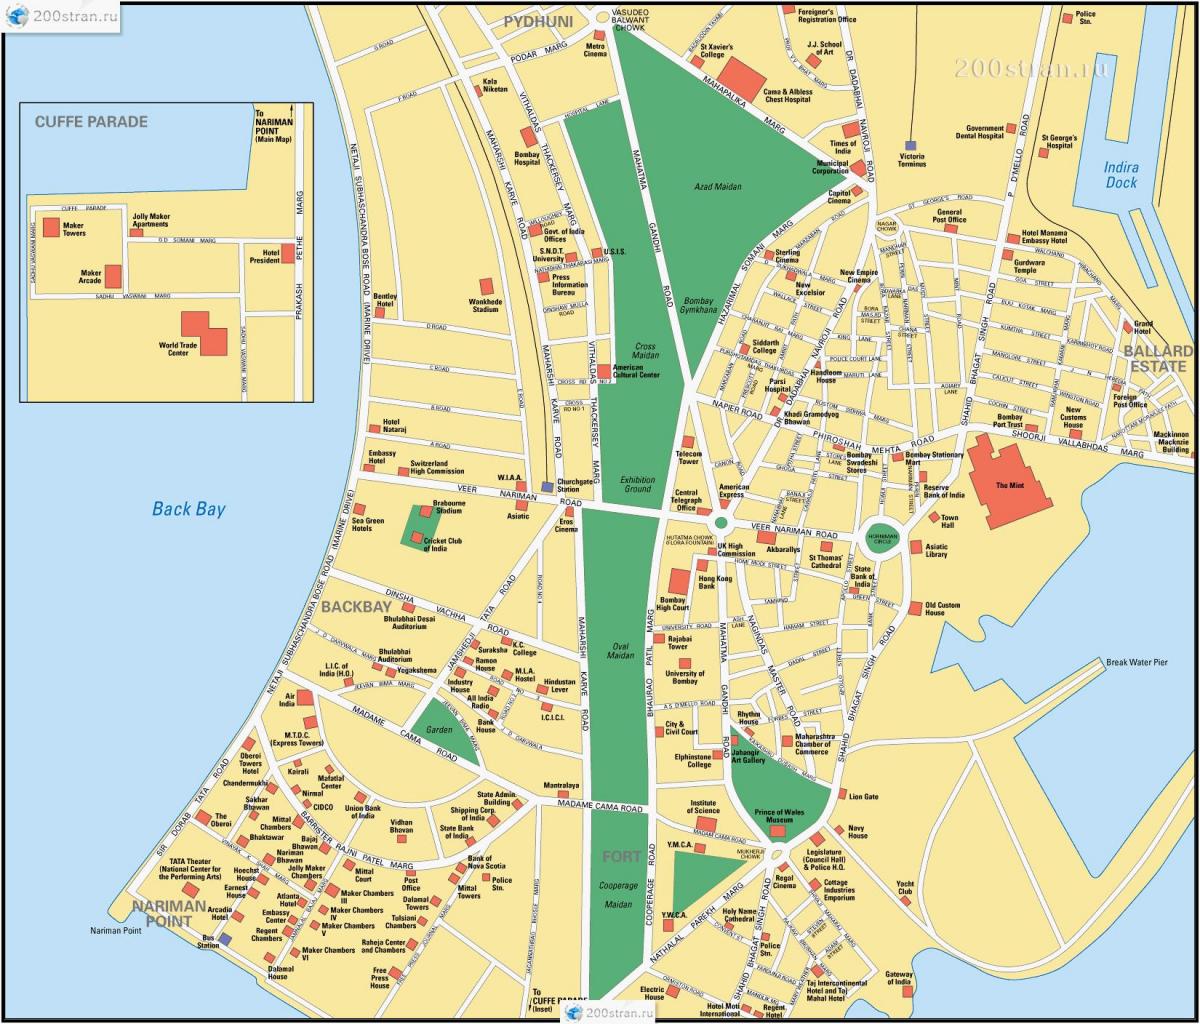 ムンバイ - ボンベイの街並みマップ